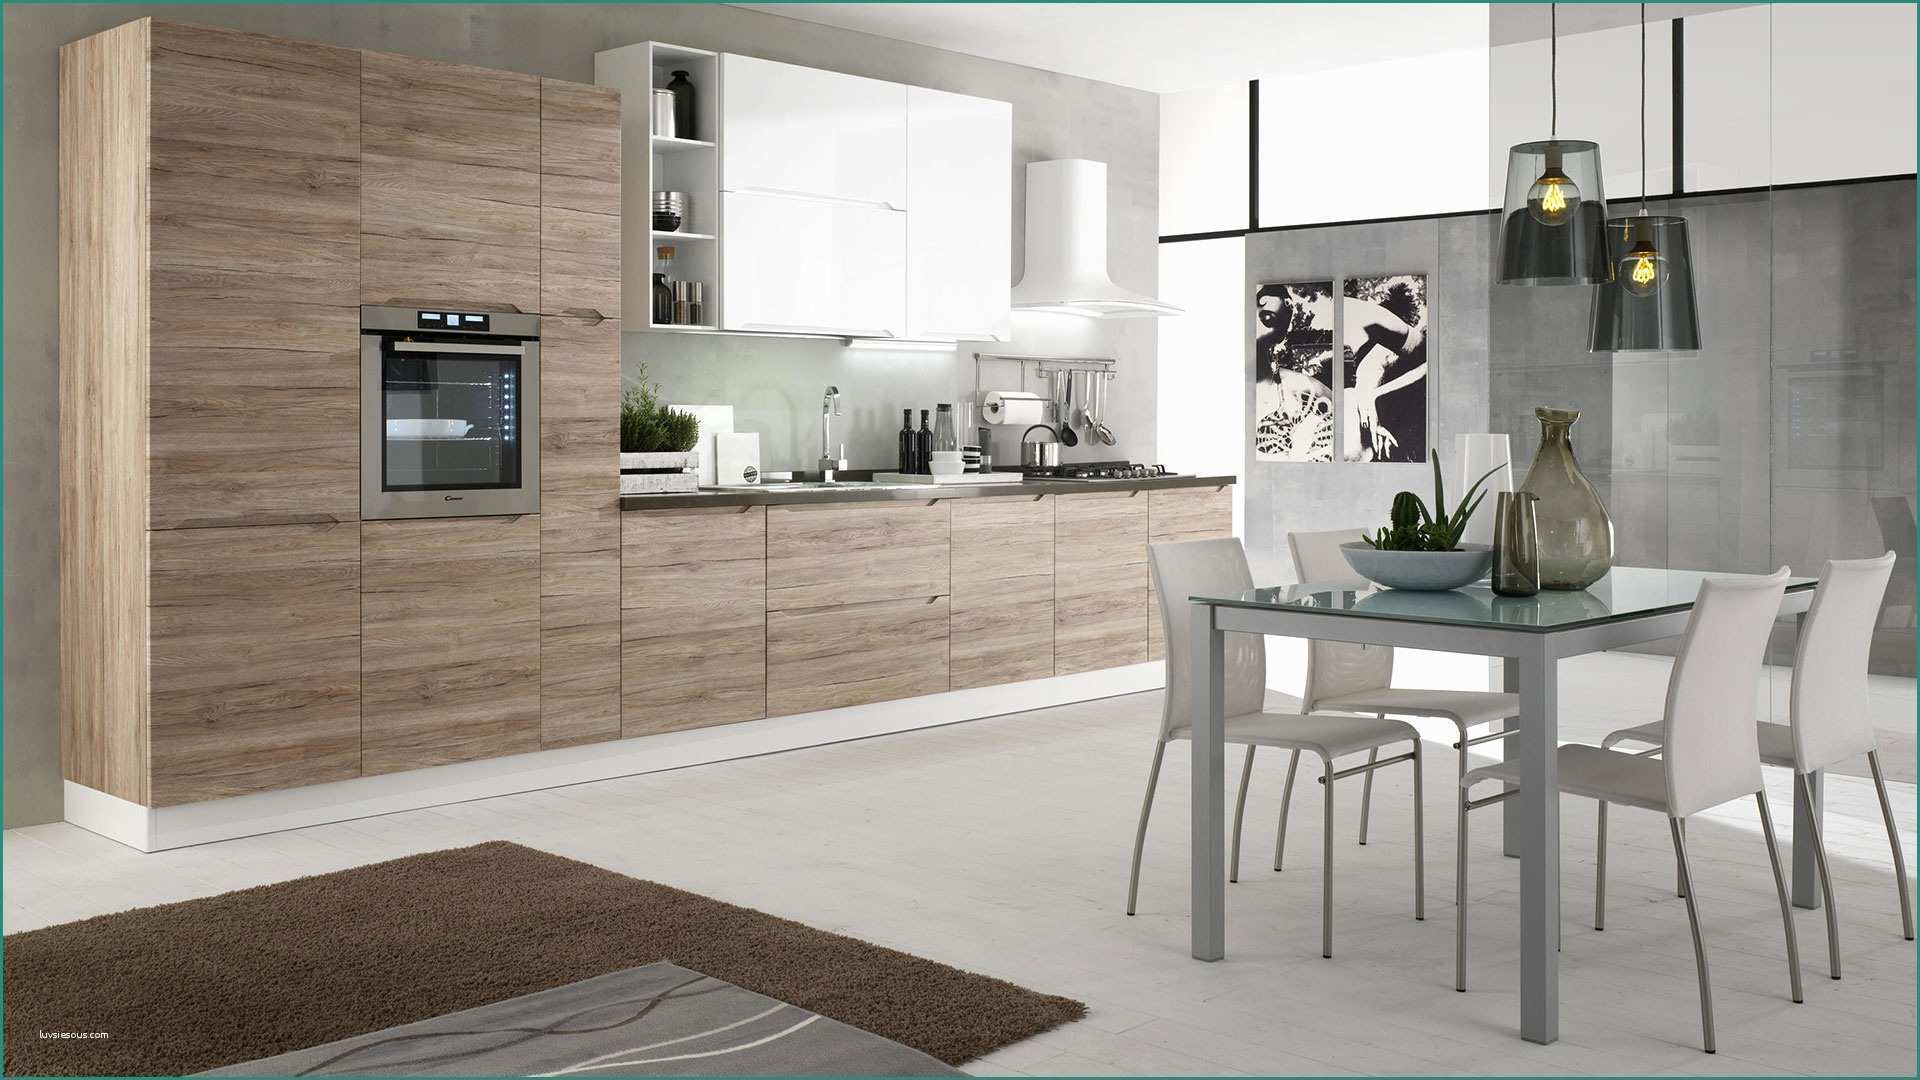 Cucine Economiche Moderne E Immagini Di Cucine Moderne Excellent soggiorno Open Space soggiorno